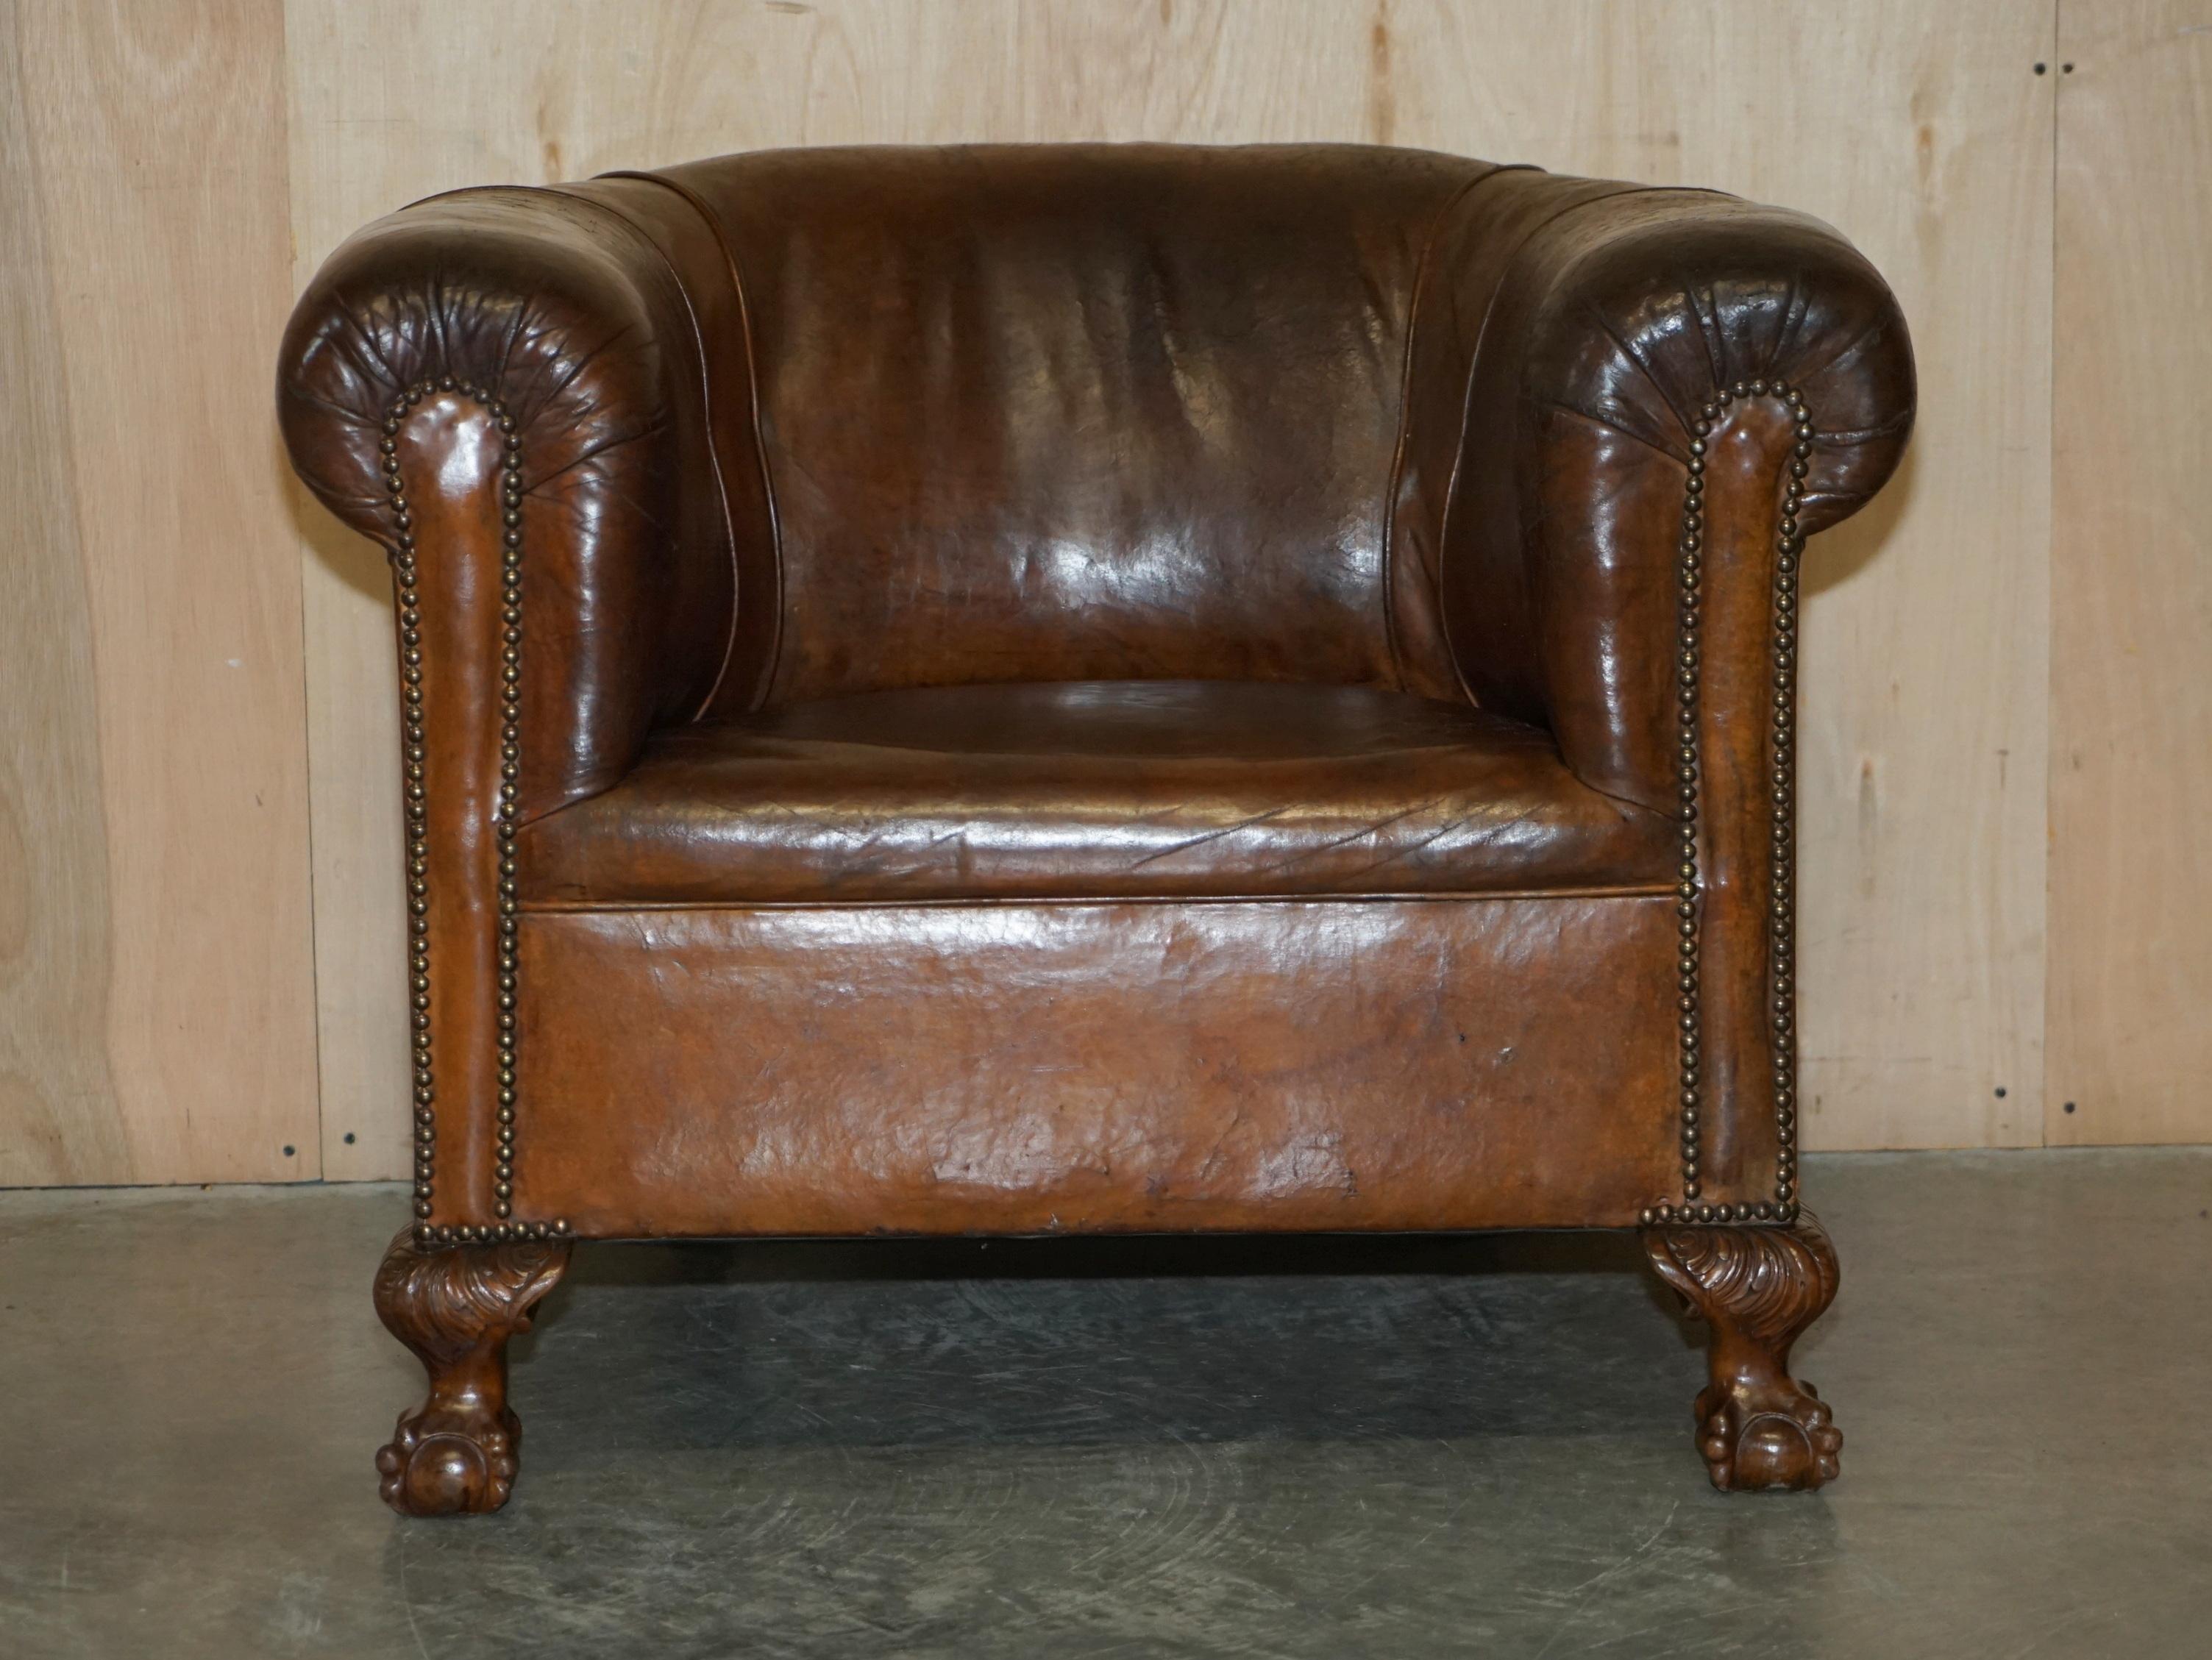 Wir freuen uns, diesen originalen braunen Ledersessel aus der Zeit um 1880 mit handgeschnitzten Krallen- und Kugelfüßen zum Verkauf anzubieten.

Ein gut aussehender, gut gemacht und dekorative Stuhl, es ist außergewöhnlich bequem und etwas größer